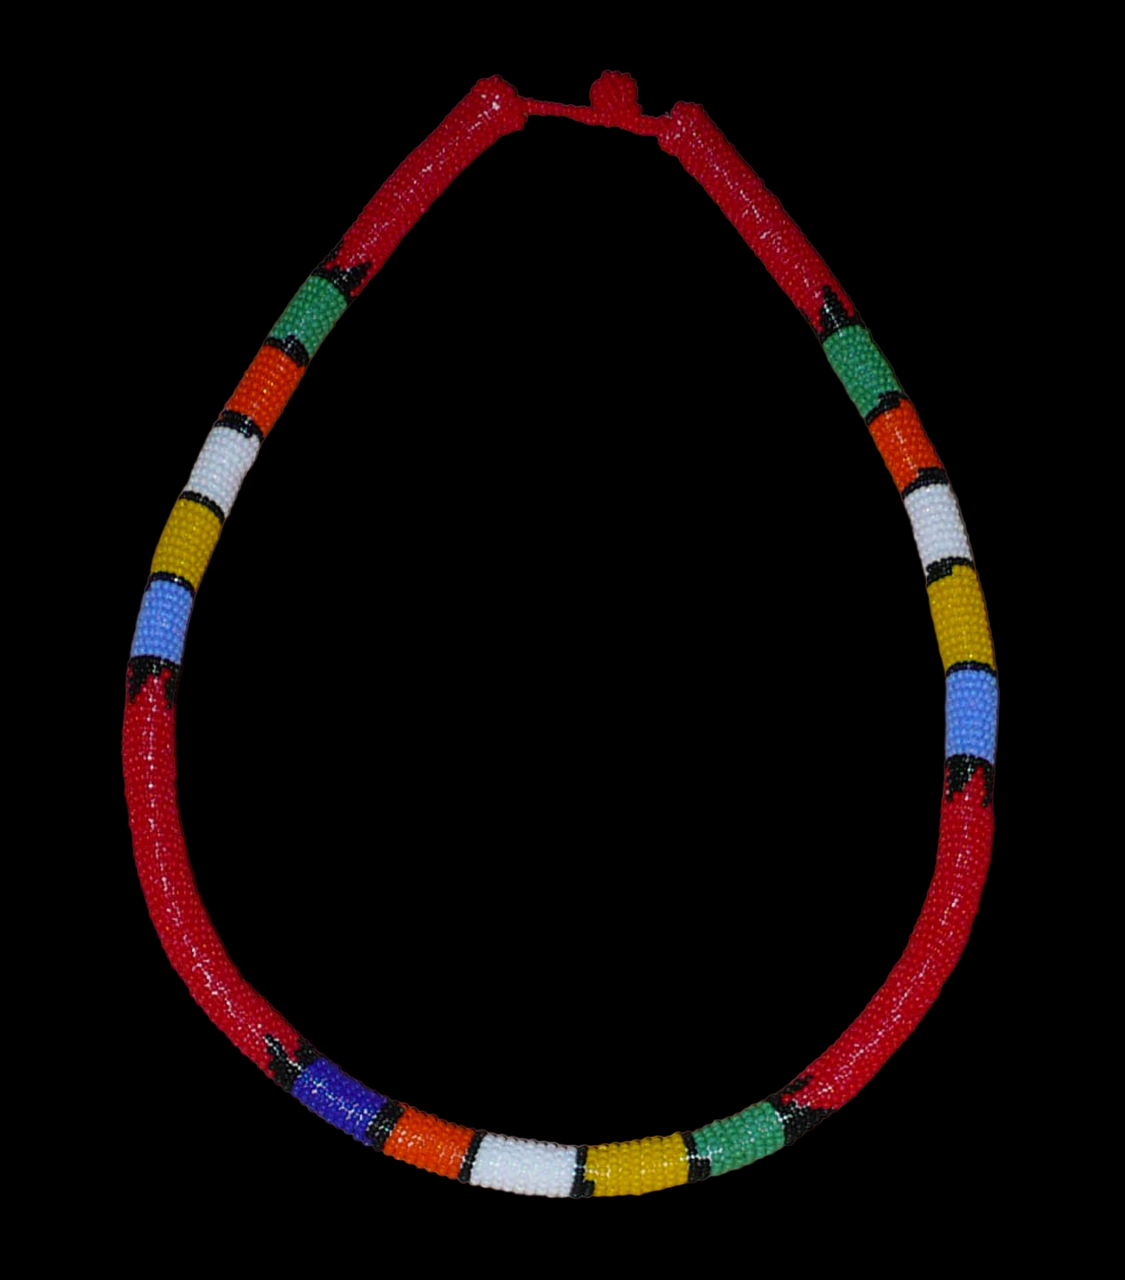 Collier sud-africain tubulaire rouge et multicolore. Composé d'un tube de plastique autour duquel sont enroulées des minuscules perles de rocaille rouges alternées avec des motifs ethniques traditionnels zoulous en bleu, jaune, blanc, orange et vert. Le collier mesure 24 cm de long (de la nuque jusqu'à la base du collier), la longueur du tour de cou du collier est 60 cm, et son épaisseur est de 1 cm. Il s'attache avec un fermoir à boule. Présenté sur un fond noir. Timeless Fineries